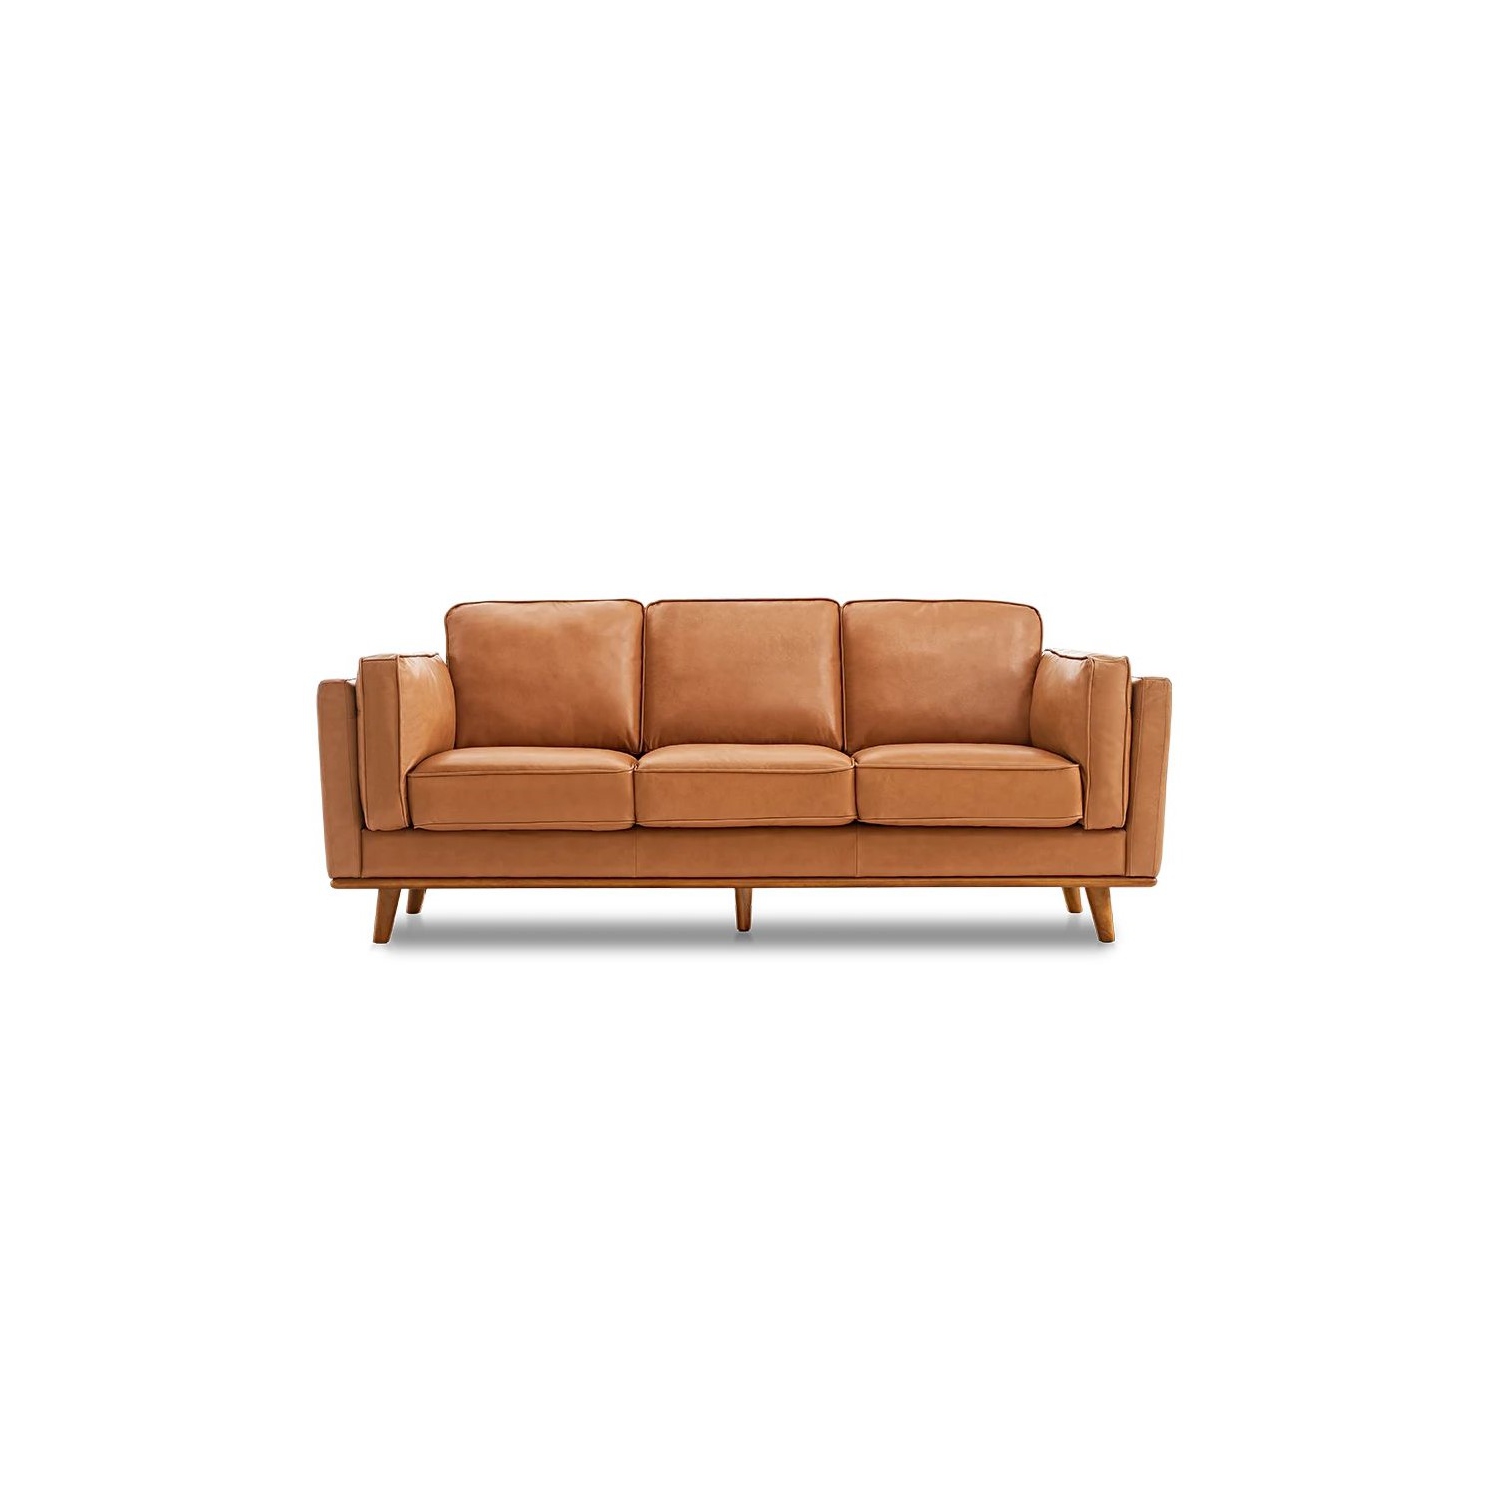 Valencia Artisan Modern Top Grain Leather Sofa with Wooden Base, Cognac